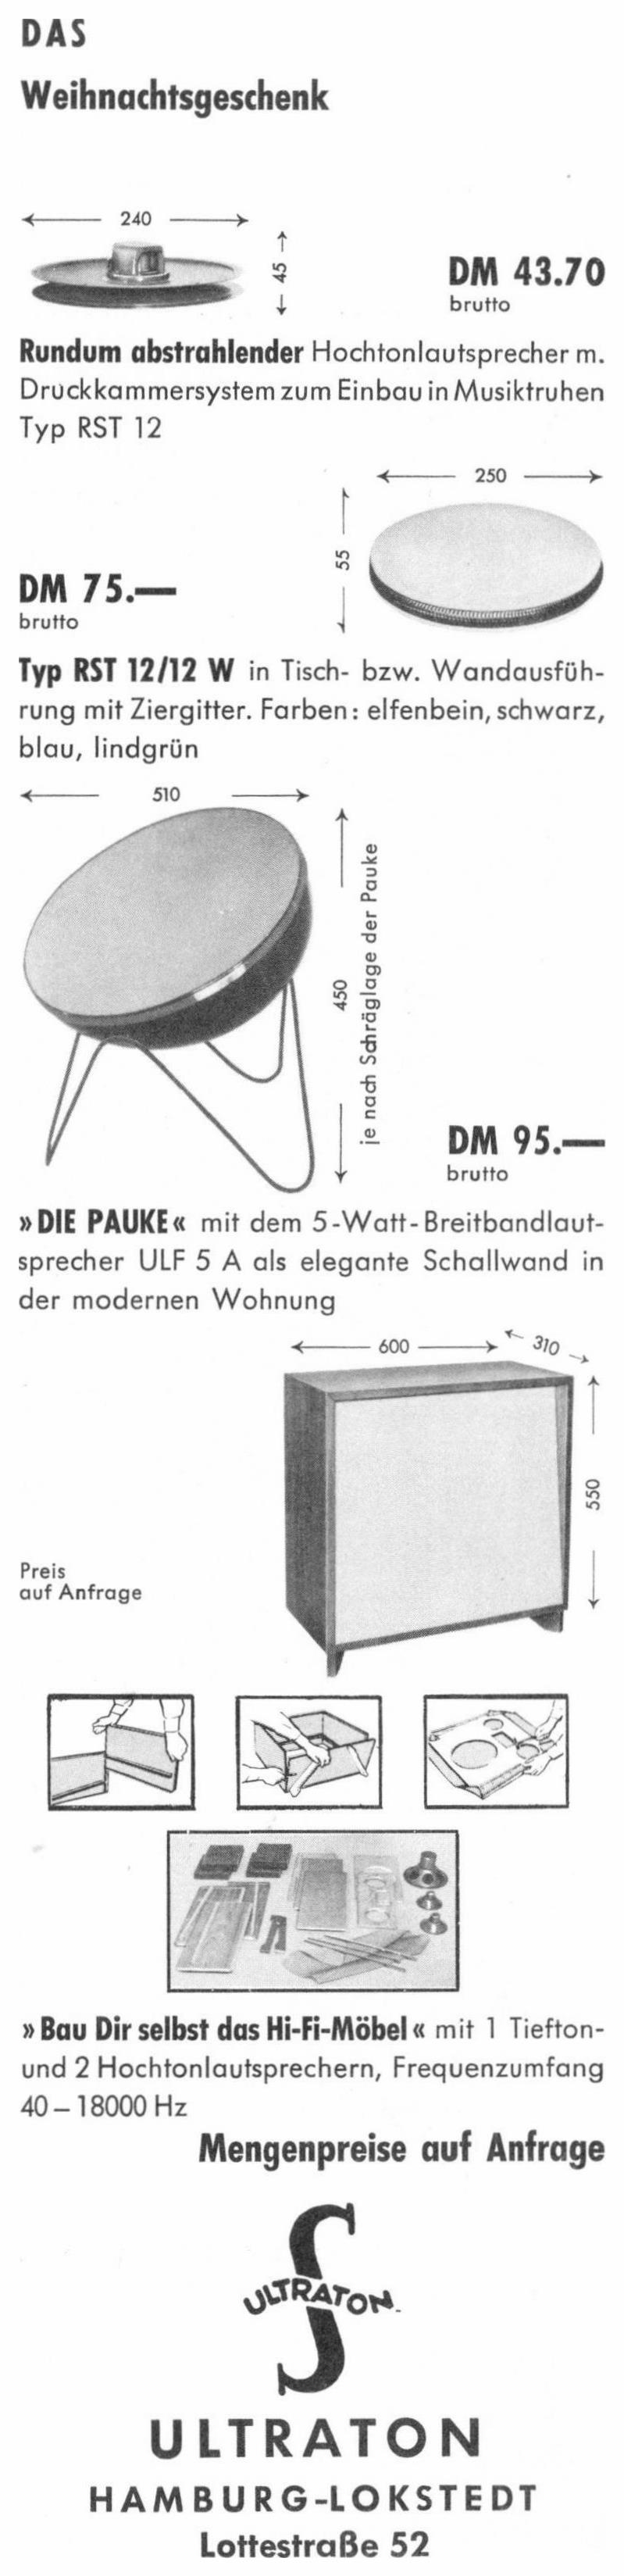 Ultraton 1957 0.jpg